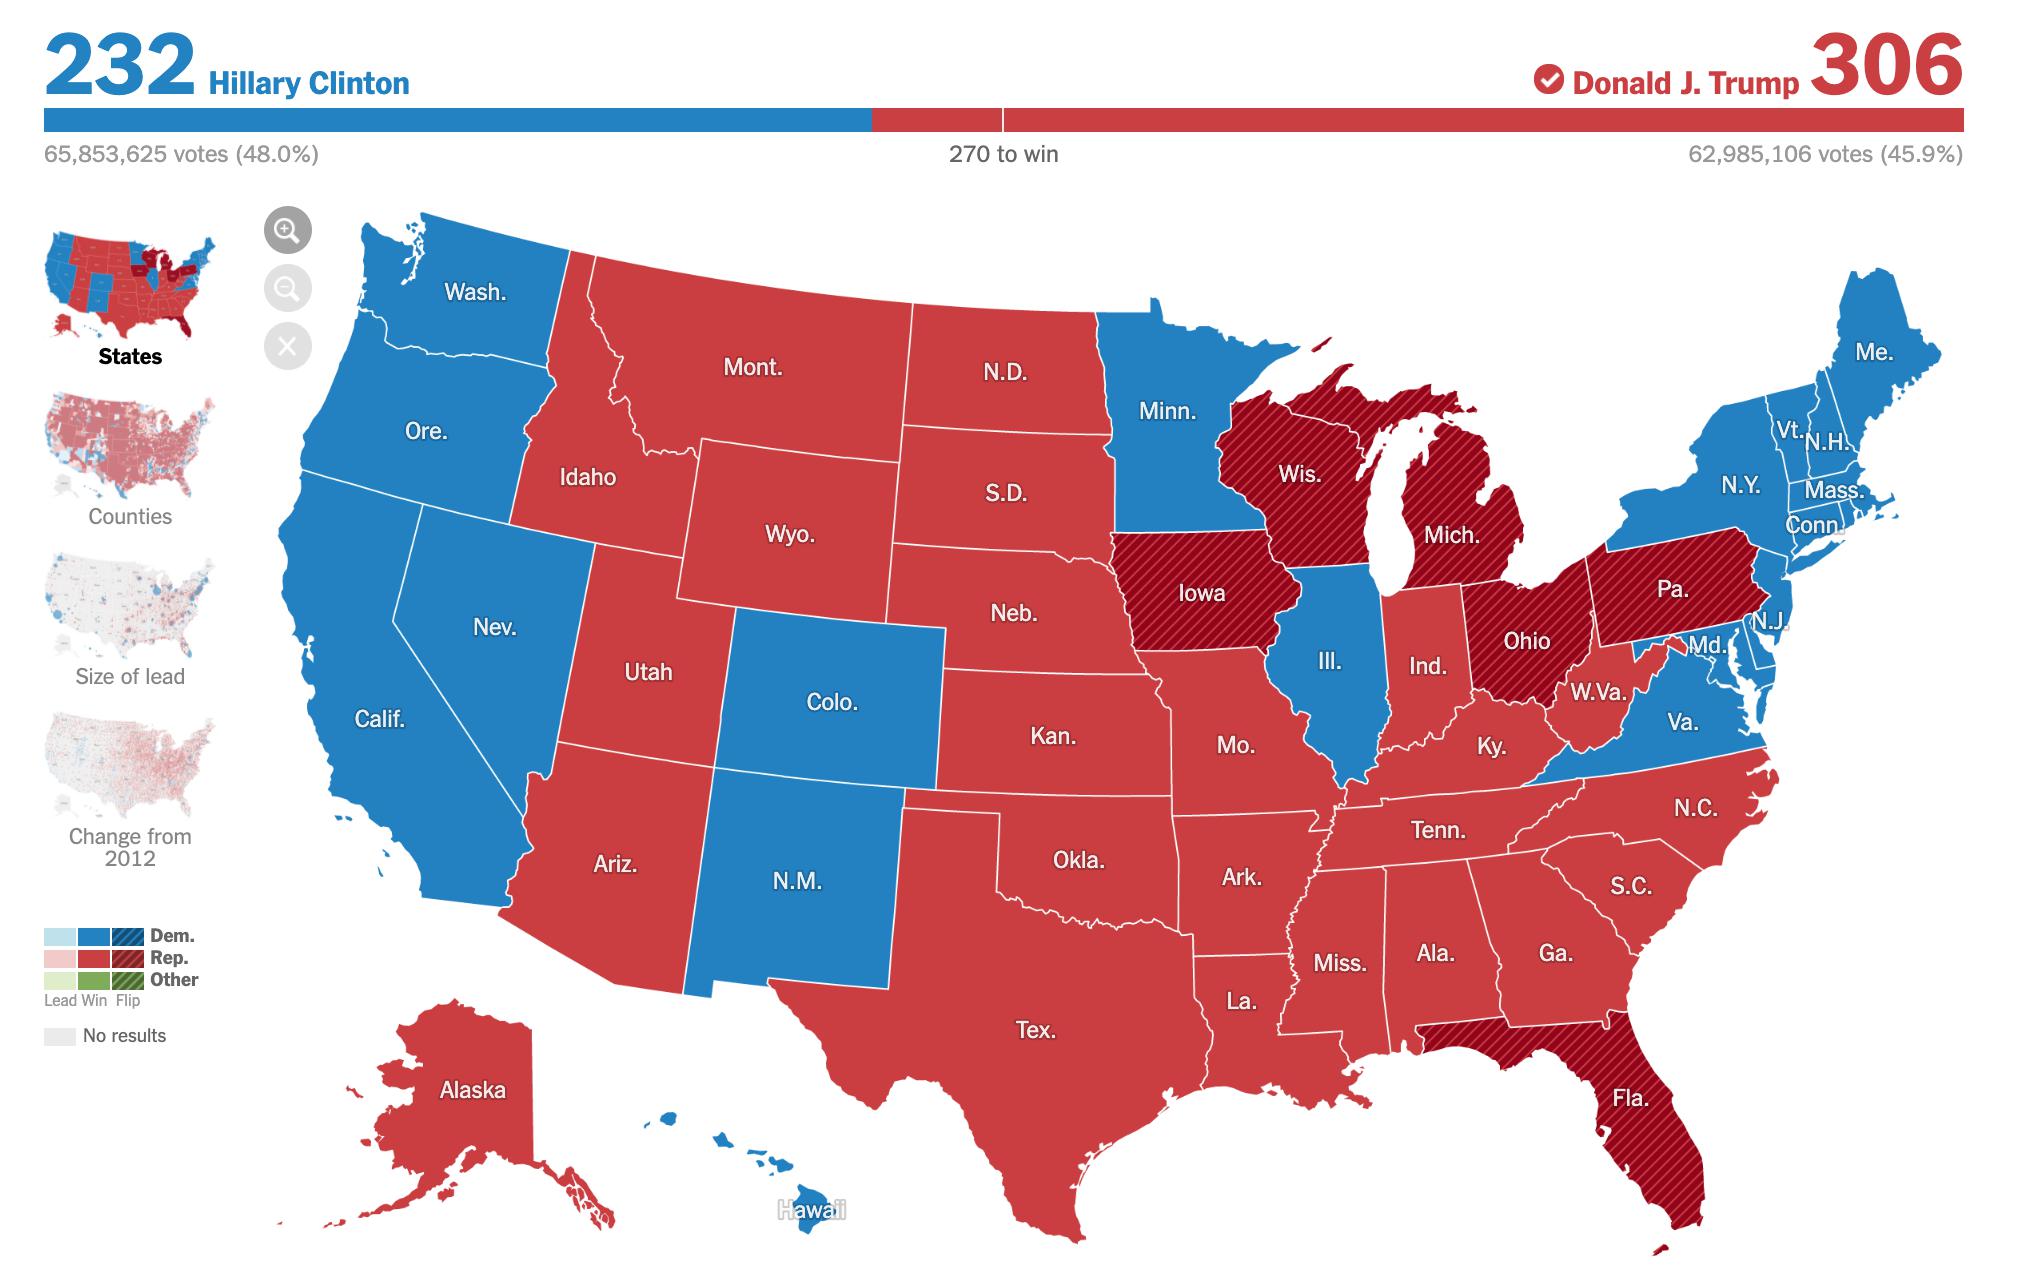 [HOT] Cập nhật TIN NÓNG BẦU CỬ MỸ NĂM 2020 - Ông Biden chỉ còn cách ghế Tổng thống 6 phiếu bầu!!!!